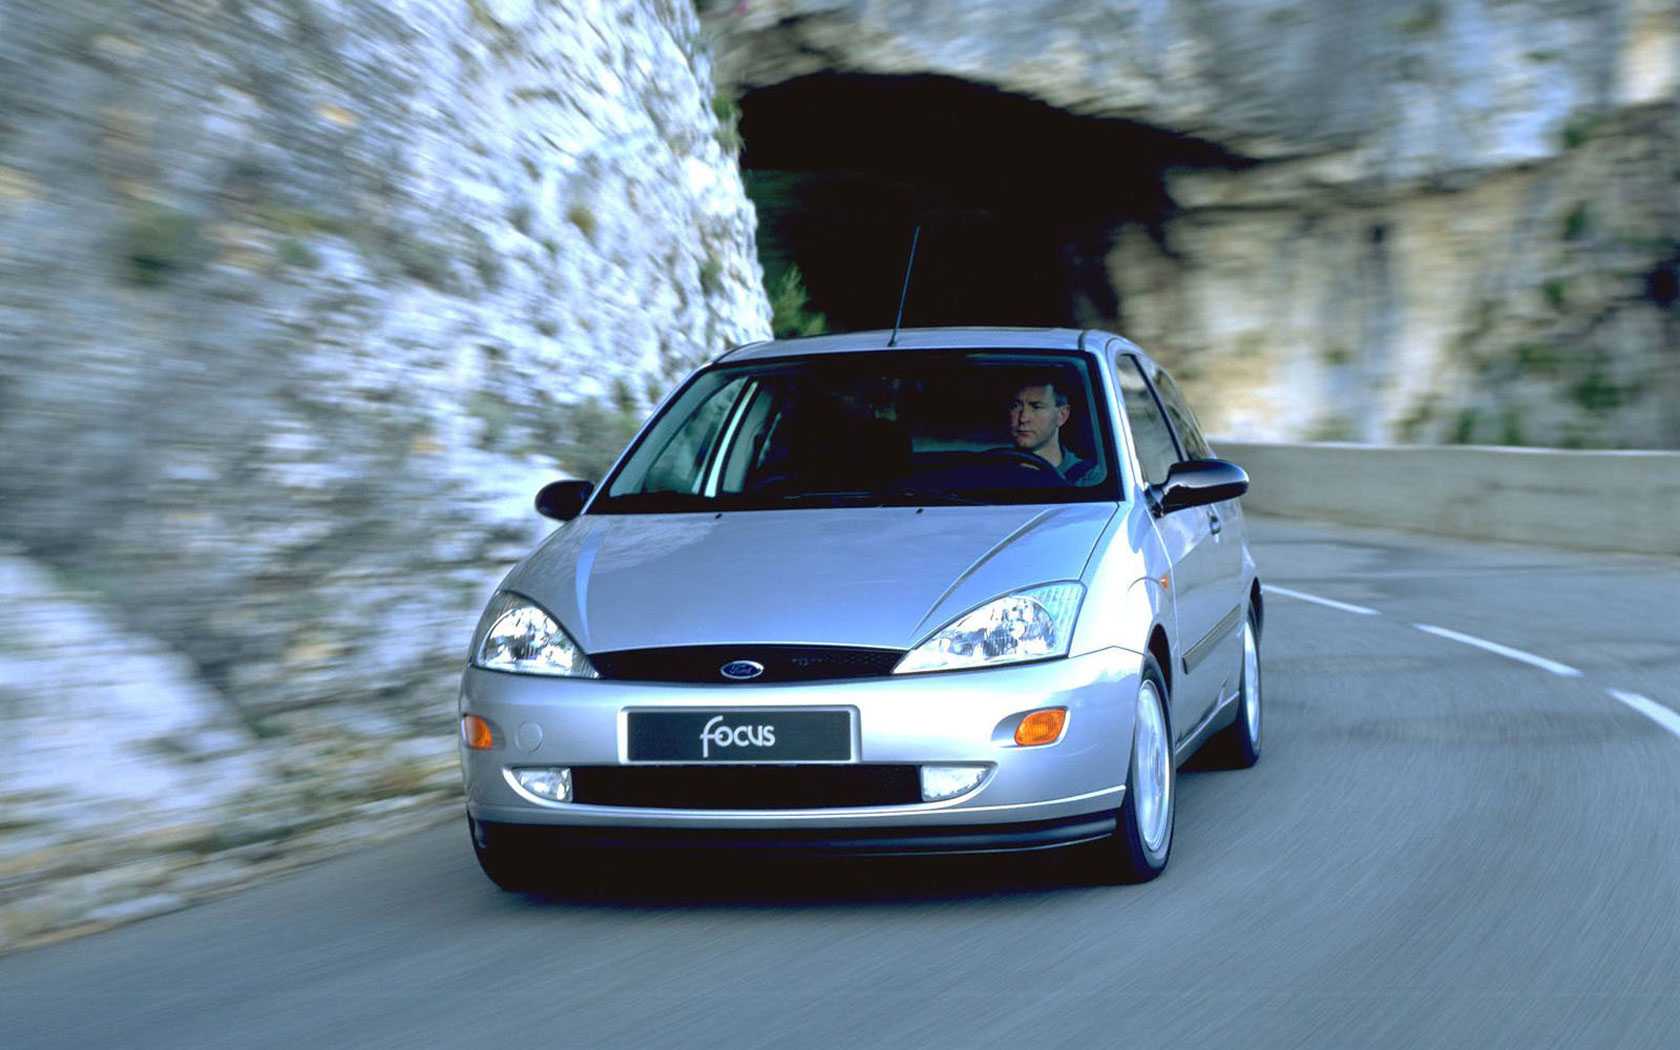 Ford focus i (1998-2005) цена, технические характеристики, фото, видео тест-драйв